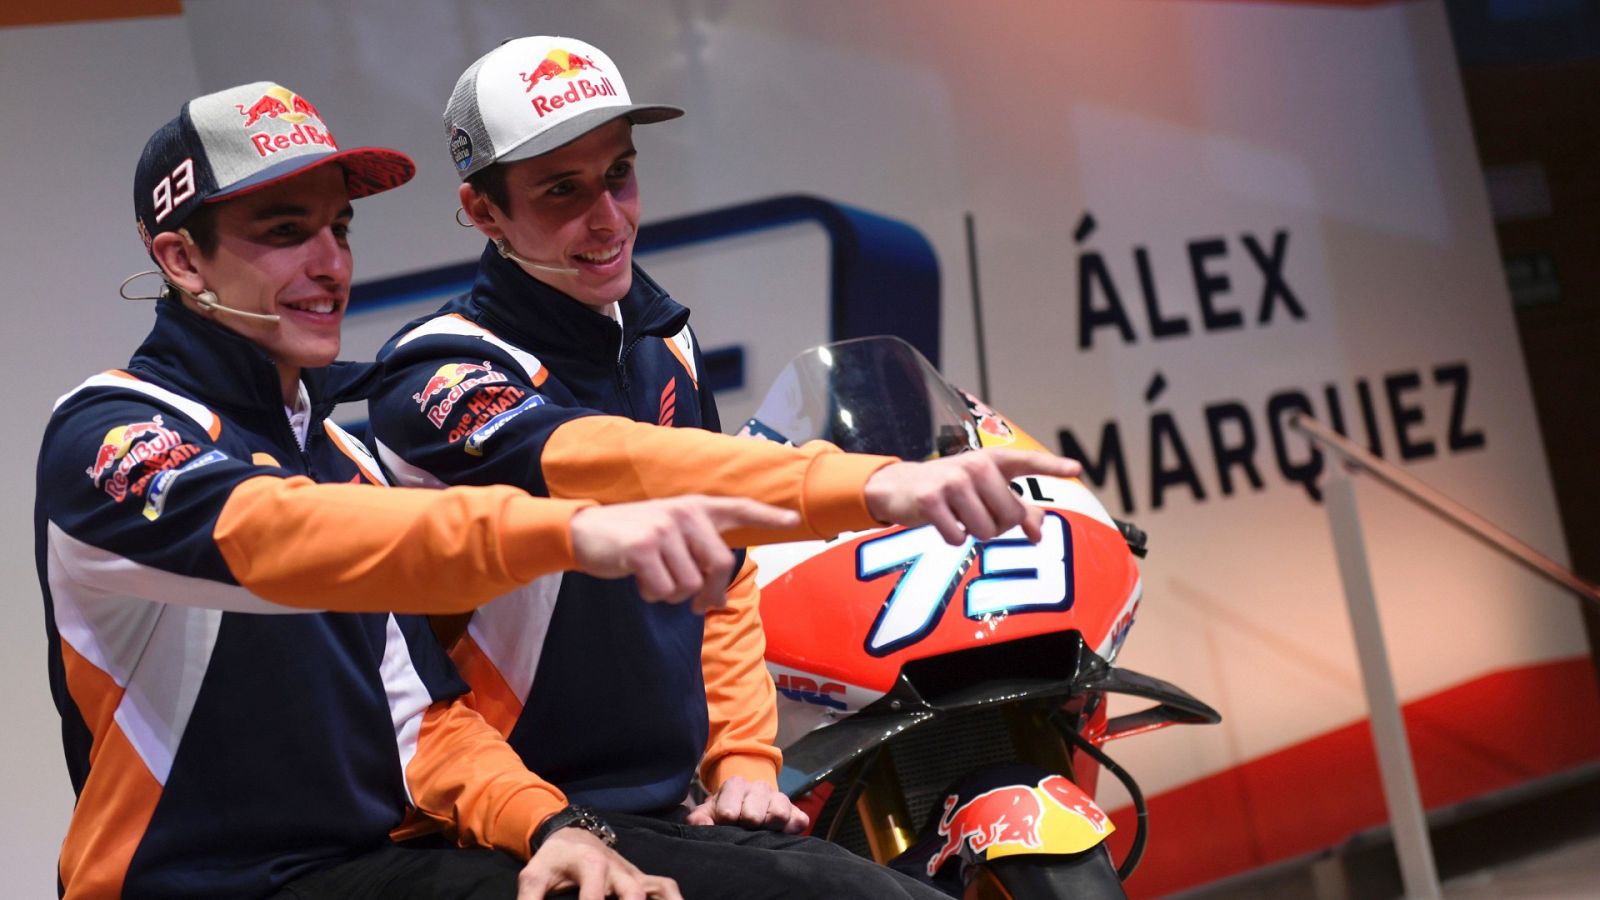 Pol Espargaró podría romper el 'Team Márquez' si ficha por Repsol-Honda